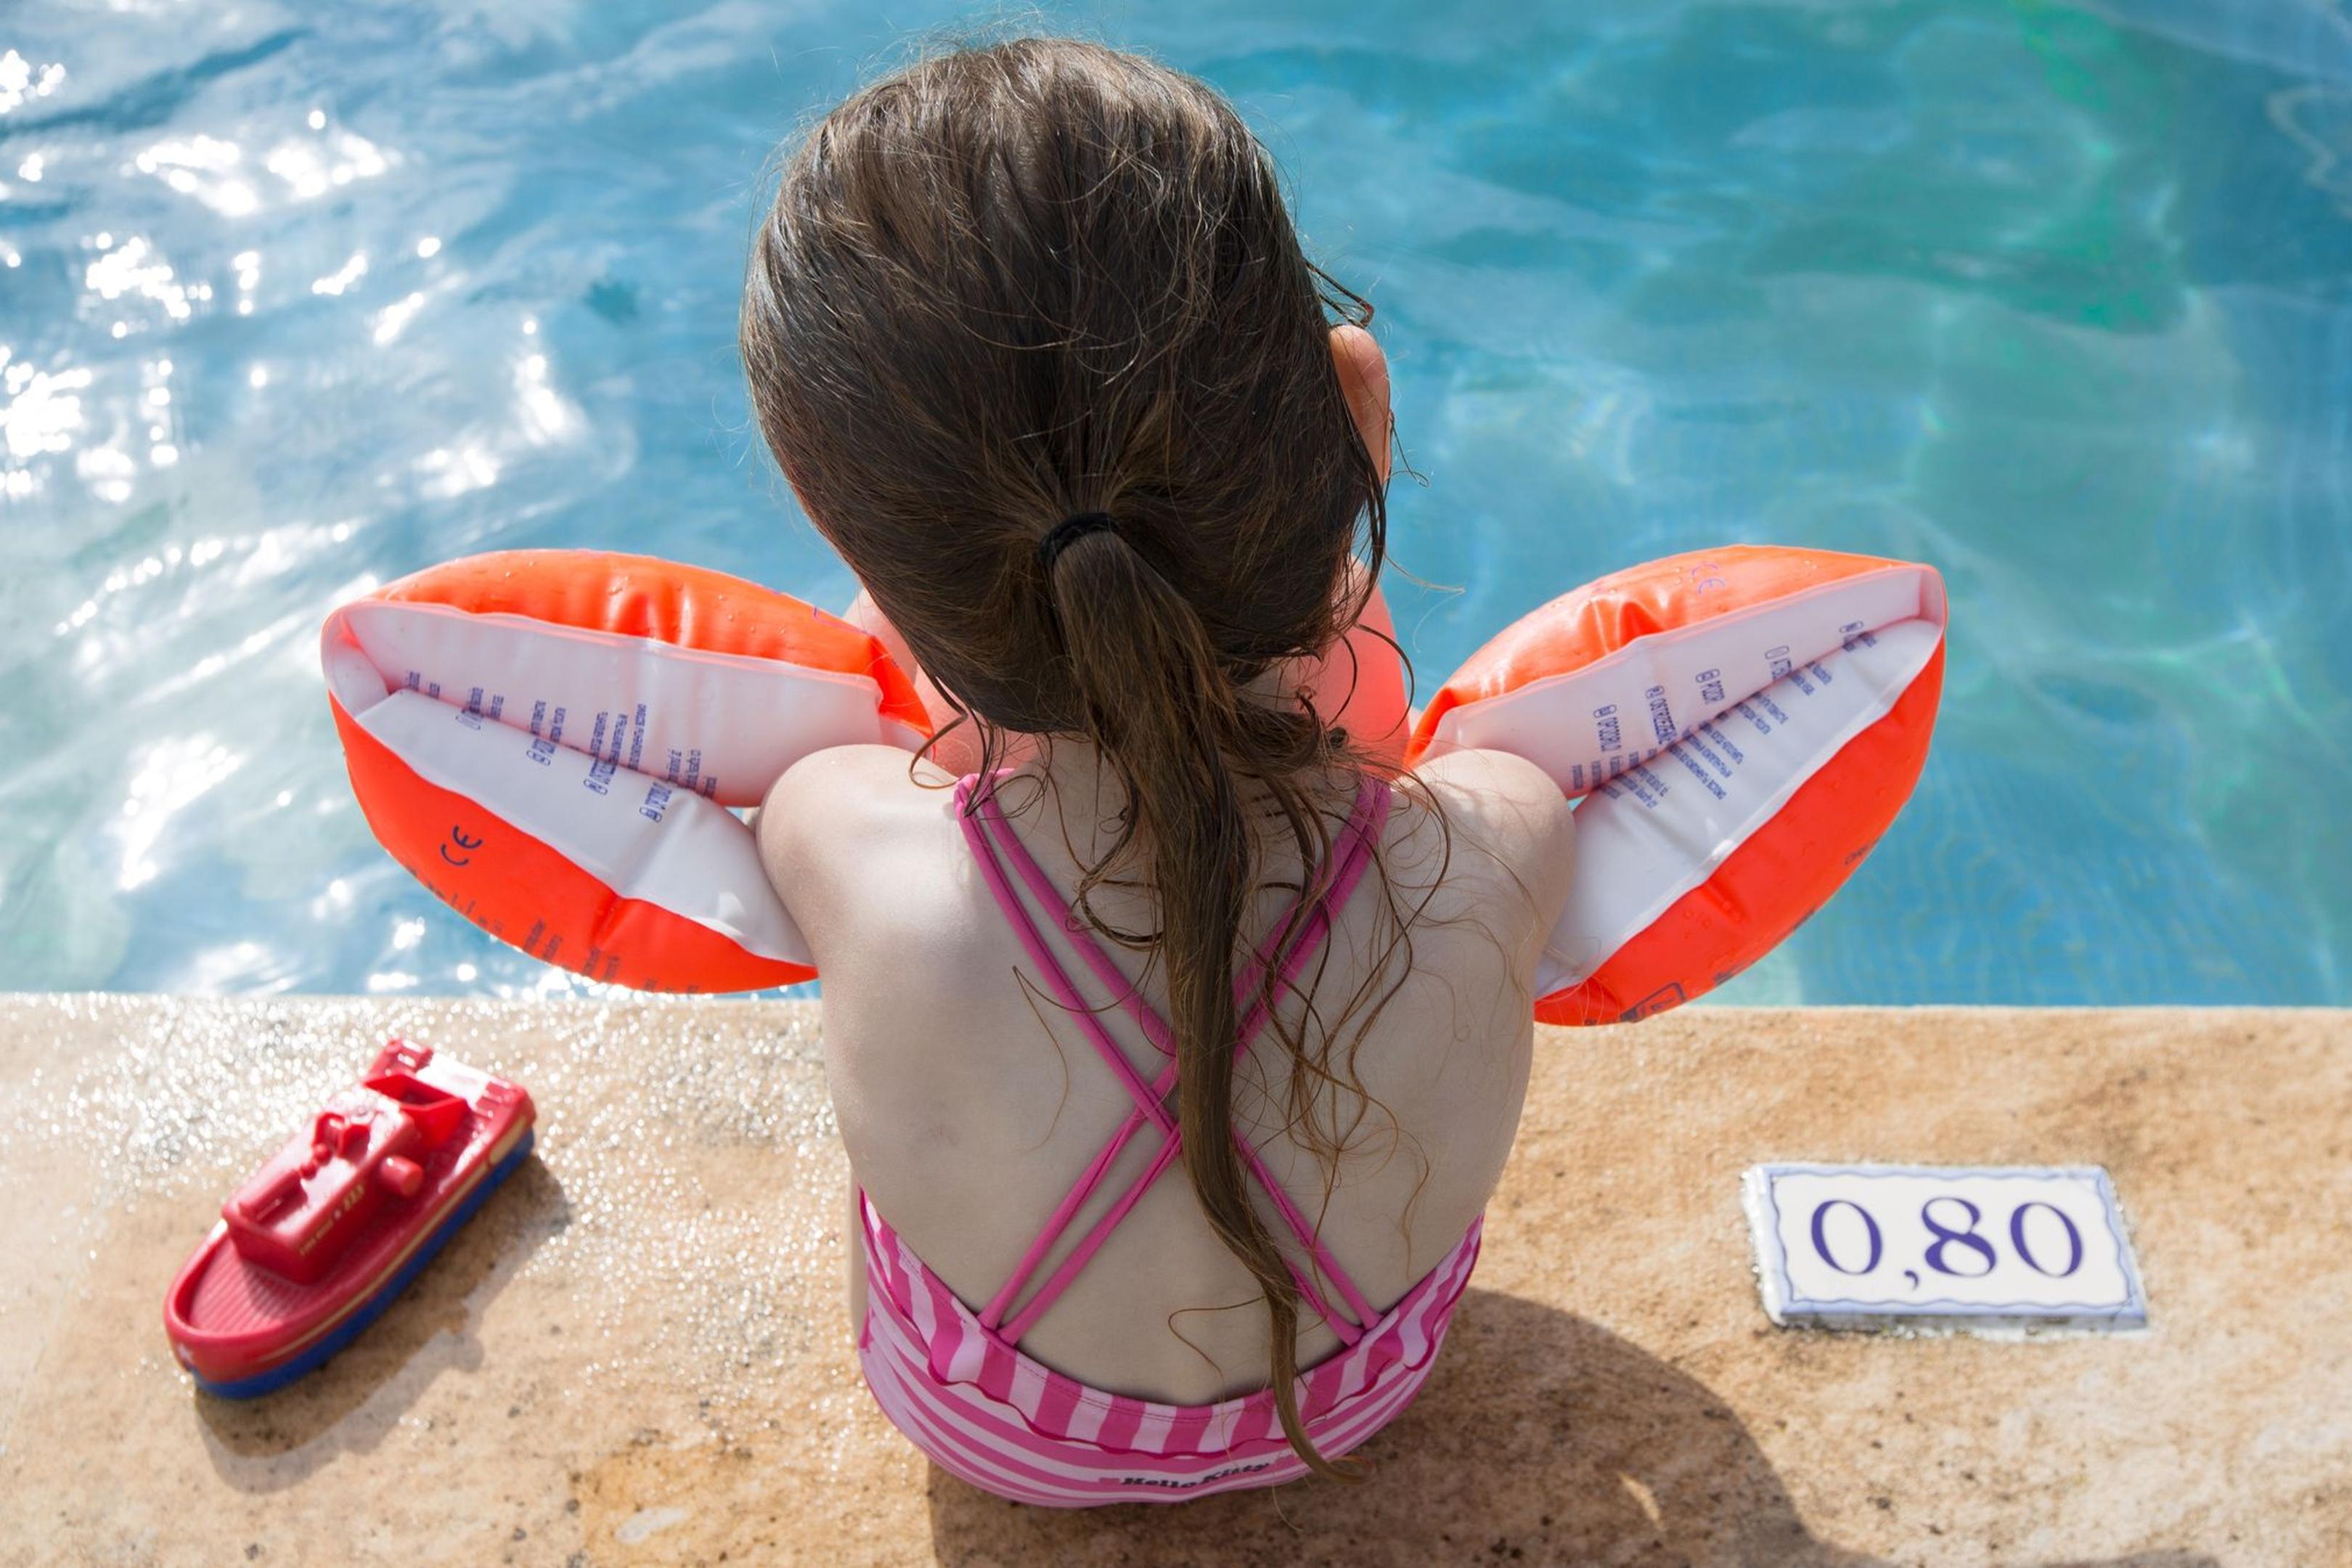 Schwimmlernhilfen sollen nicht vor dem Ertrinken schützen, sondern genug Auftrieb geben, damit sich das Kind in waagerechter Position im Wasser halten und Schwimmbewegungen üben kann.